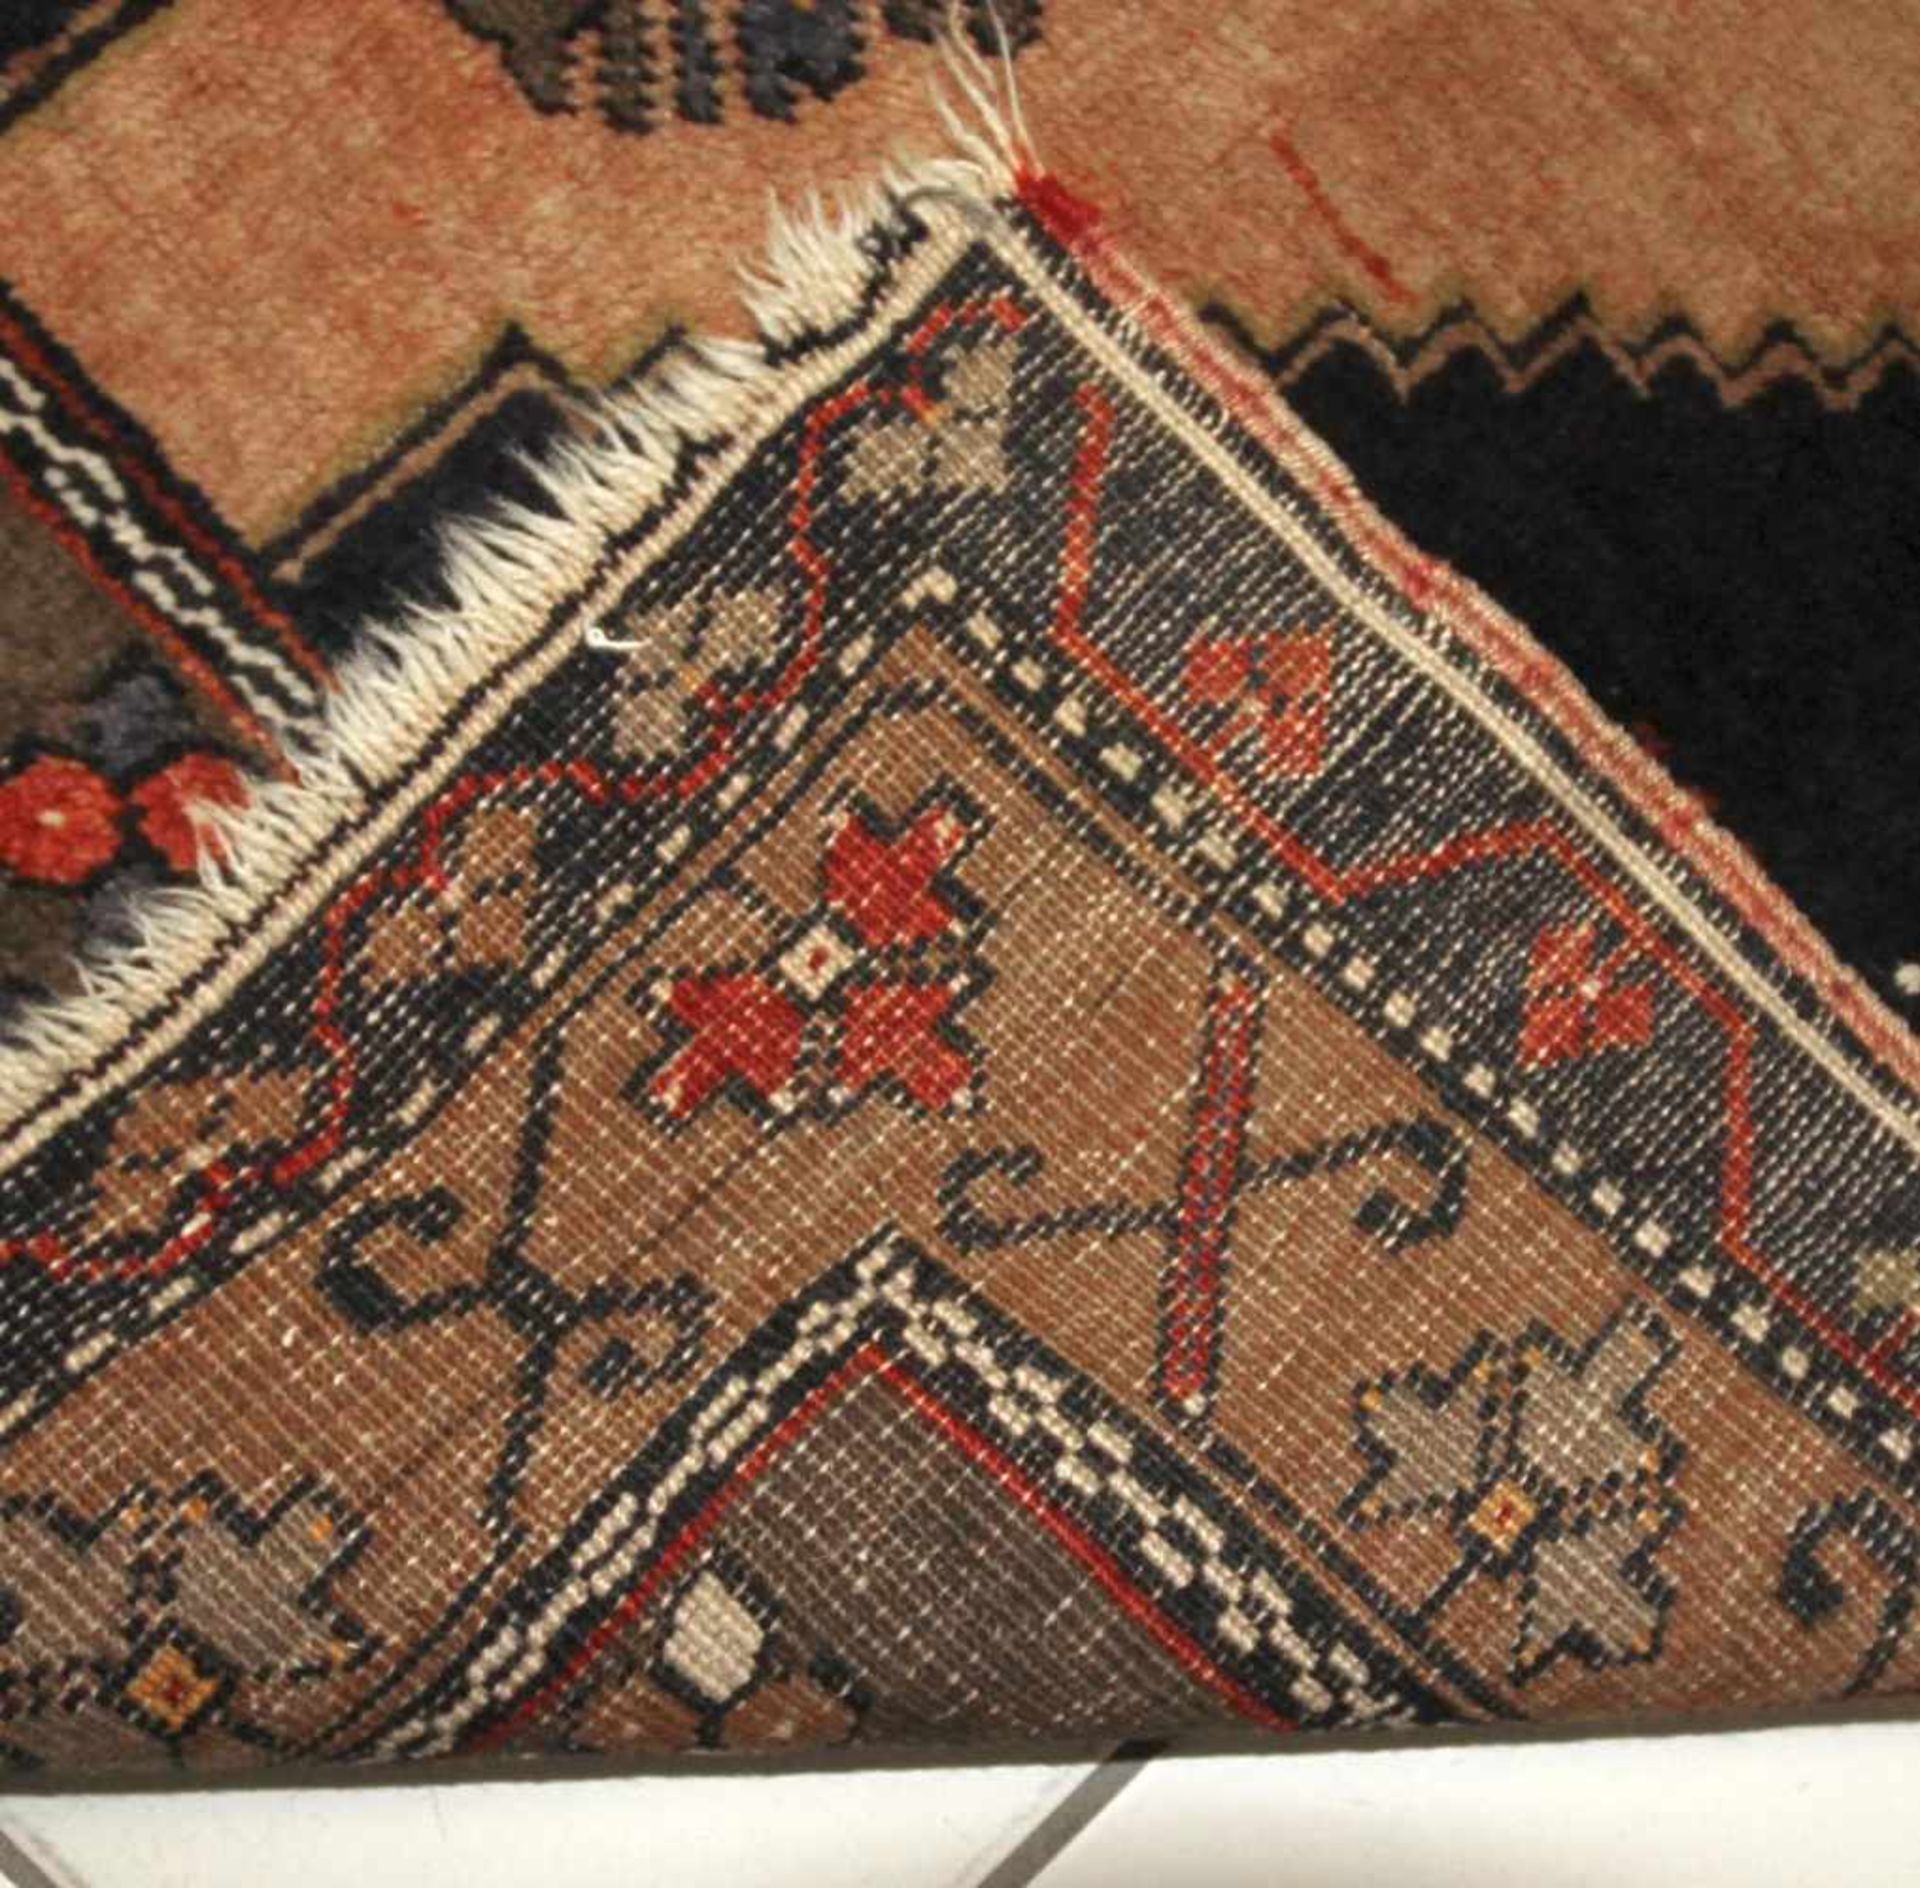 Yakyali, Türkei, Anatolien, 2. Hälfte 20. Jh.aus Wolle geknüpft, ausgefallen schöner Bauernteppich - Bild 2 aus 2